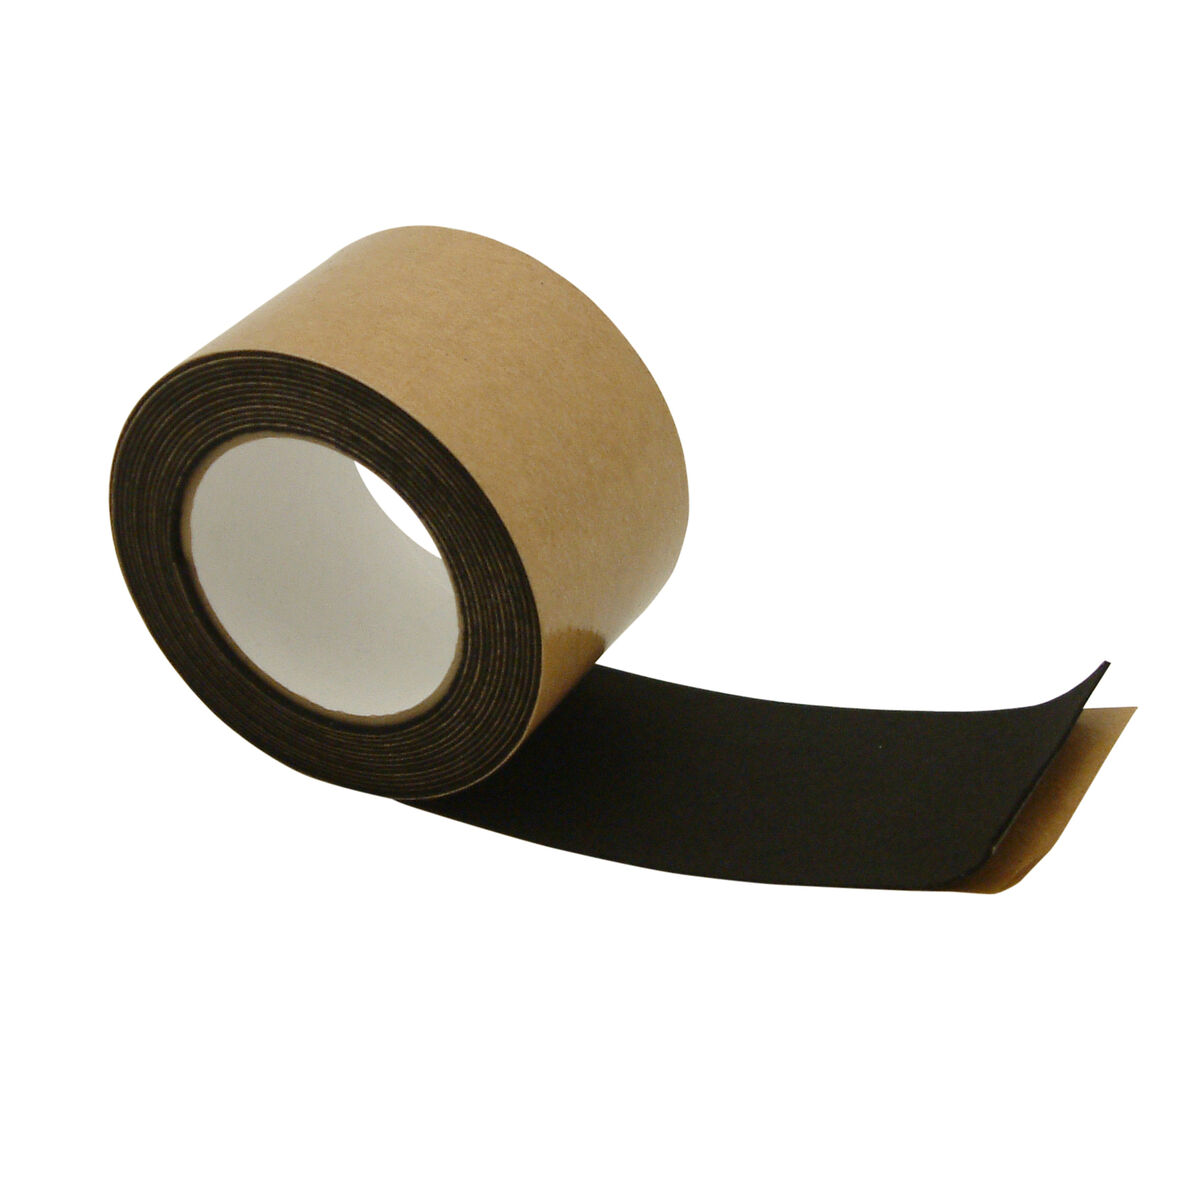 JVCC FELT-06 Polyester Felt Tape [1mm thickness felt]: 4 in. x 75 ft.  (Black)